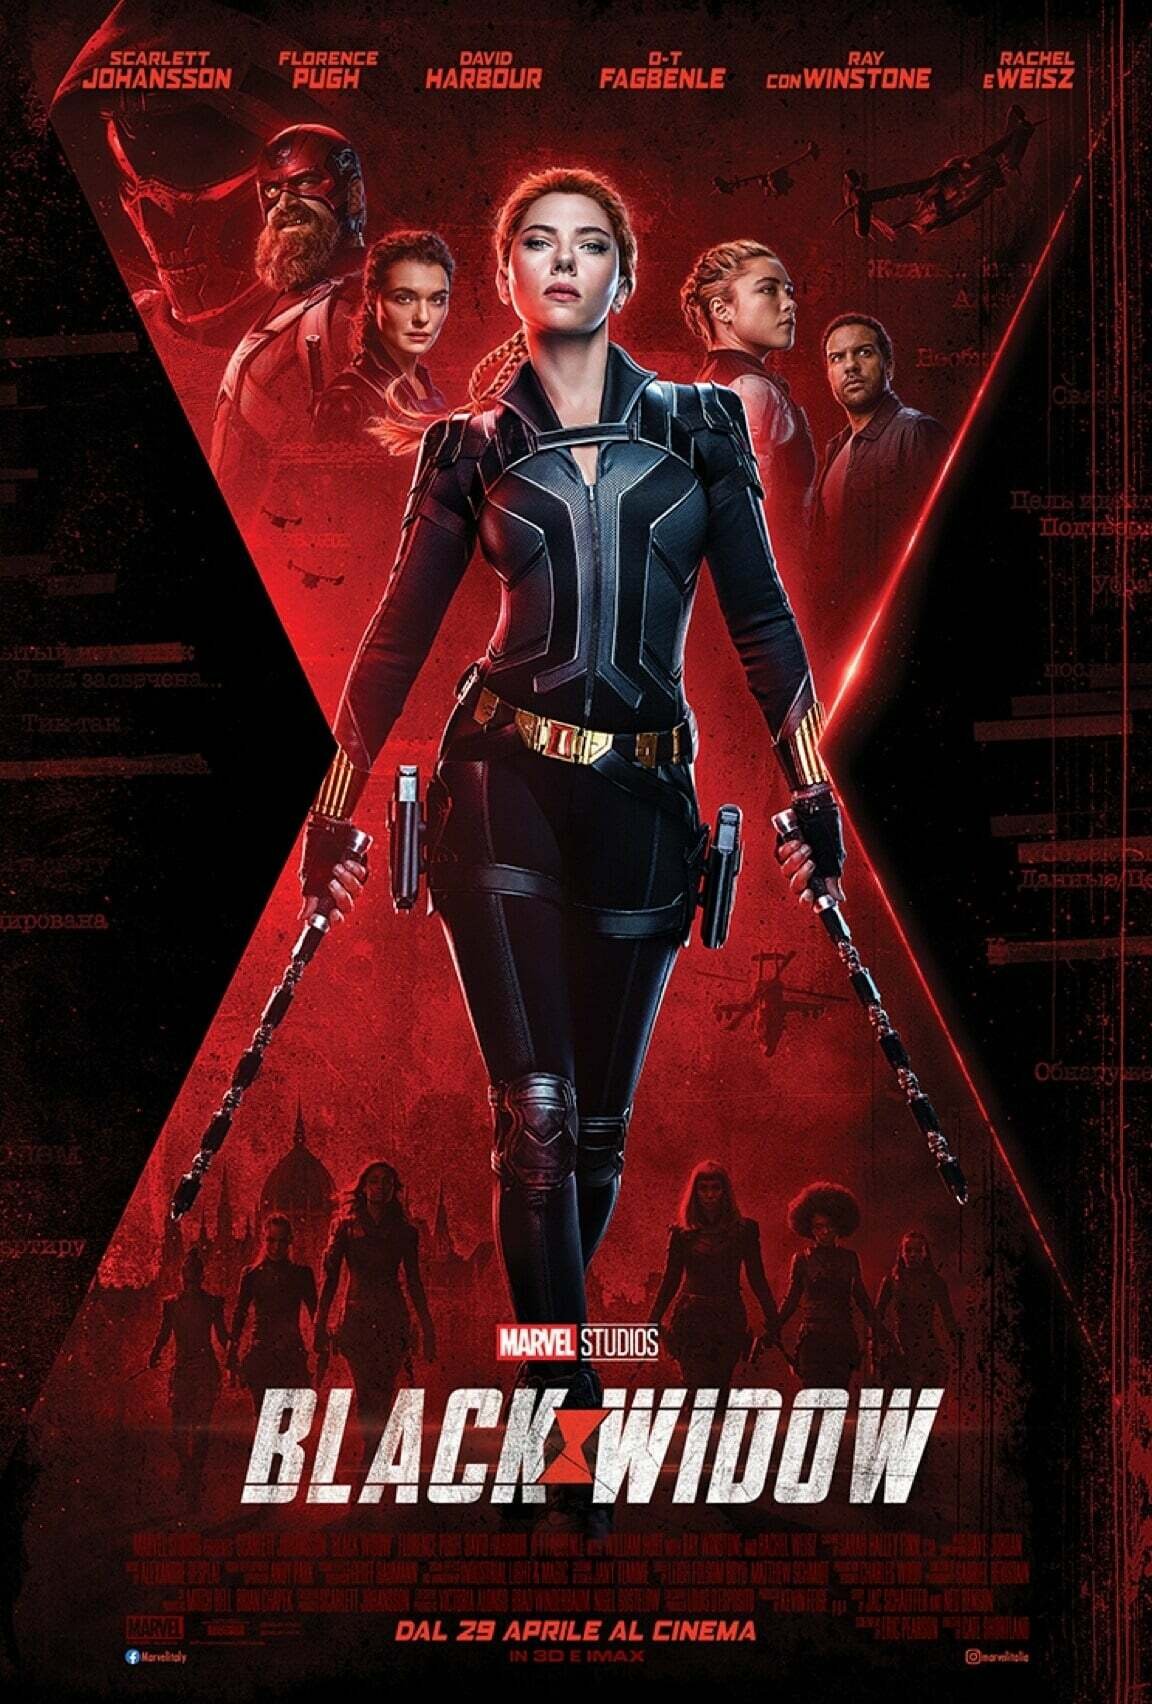 Il poster promozionale di Black Widow